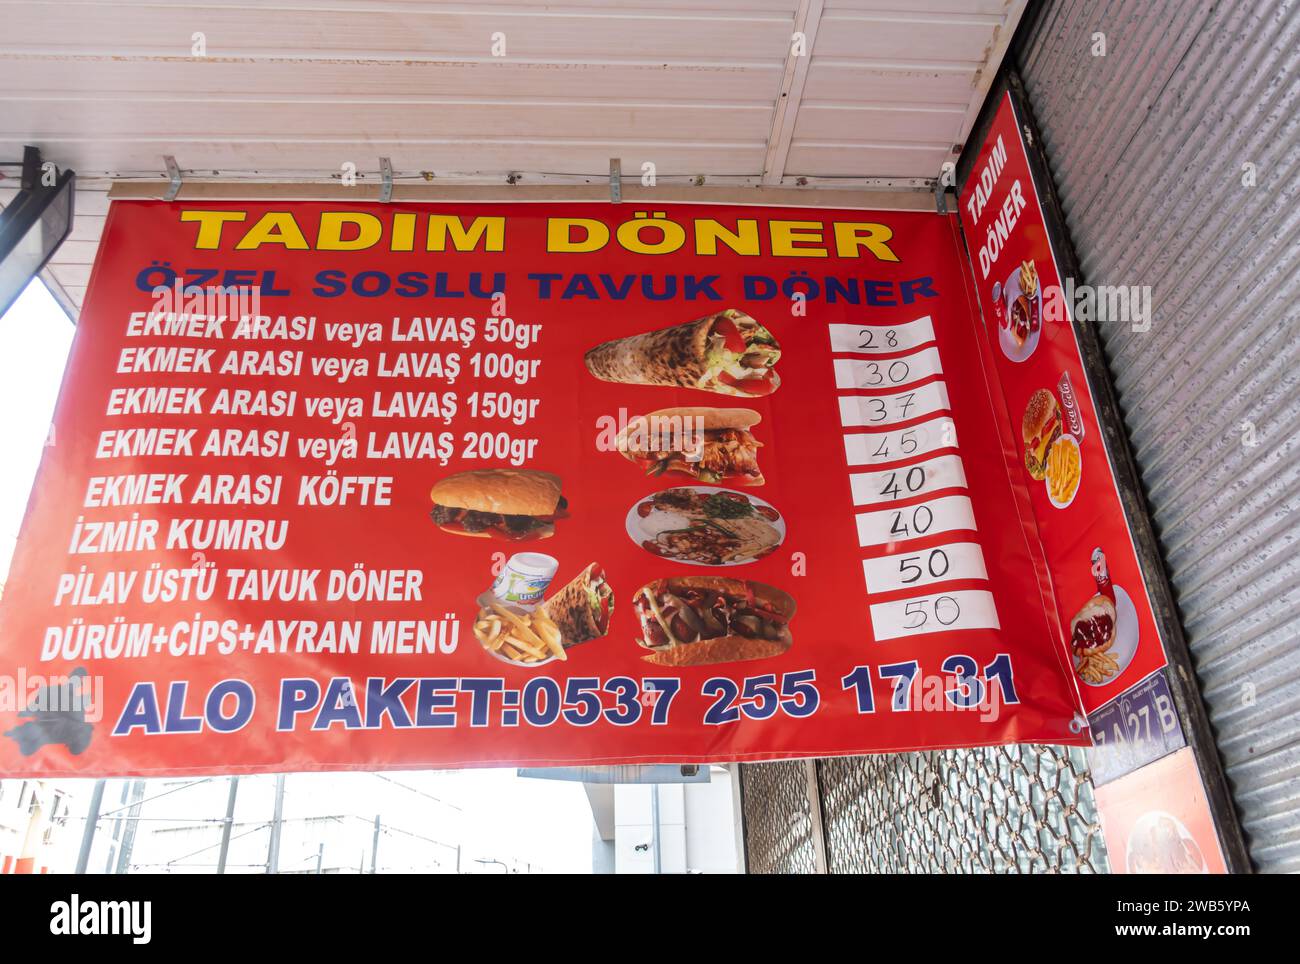 Tadim doner menu in Turkish, lavash doner kebap kebab menu prices pricing Antalya Turkey Stock Photo